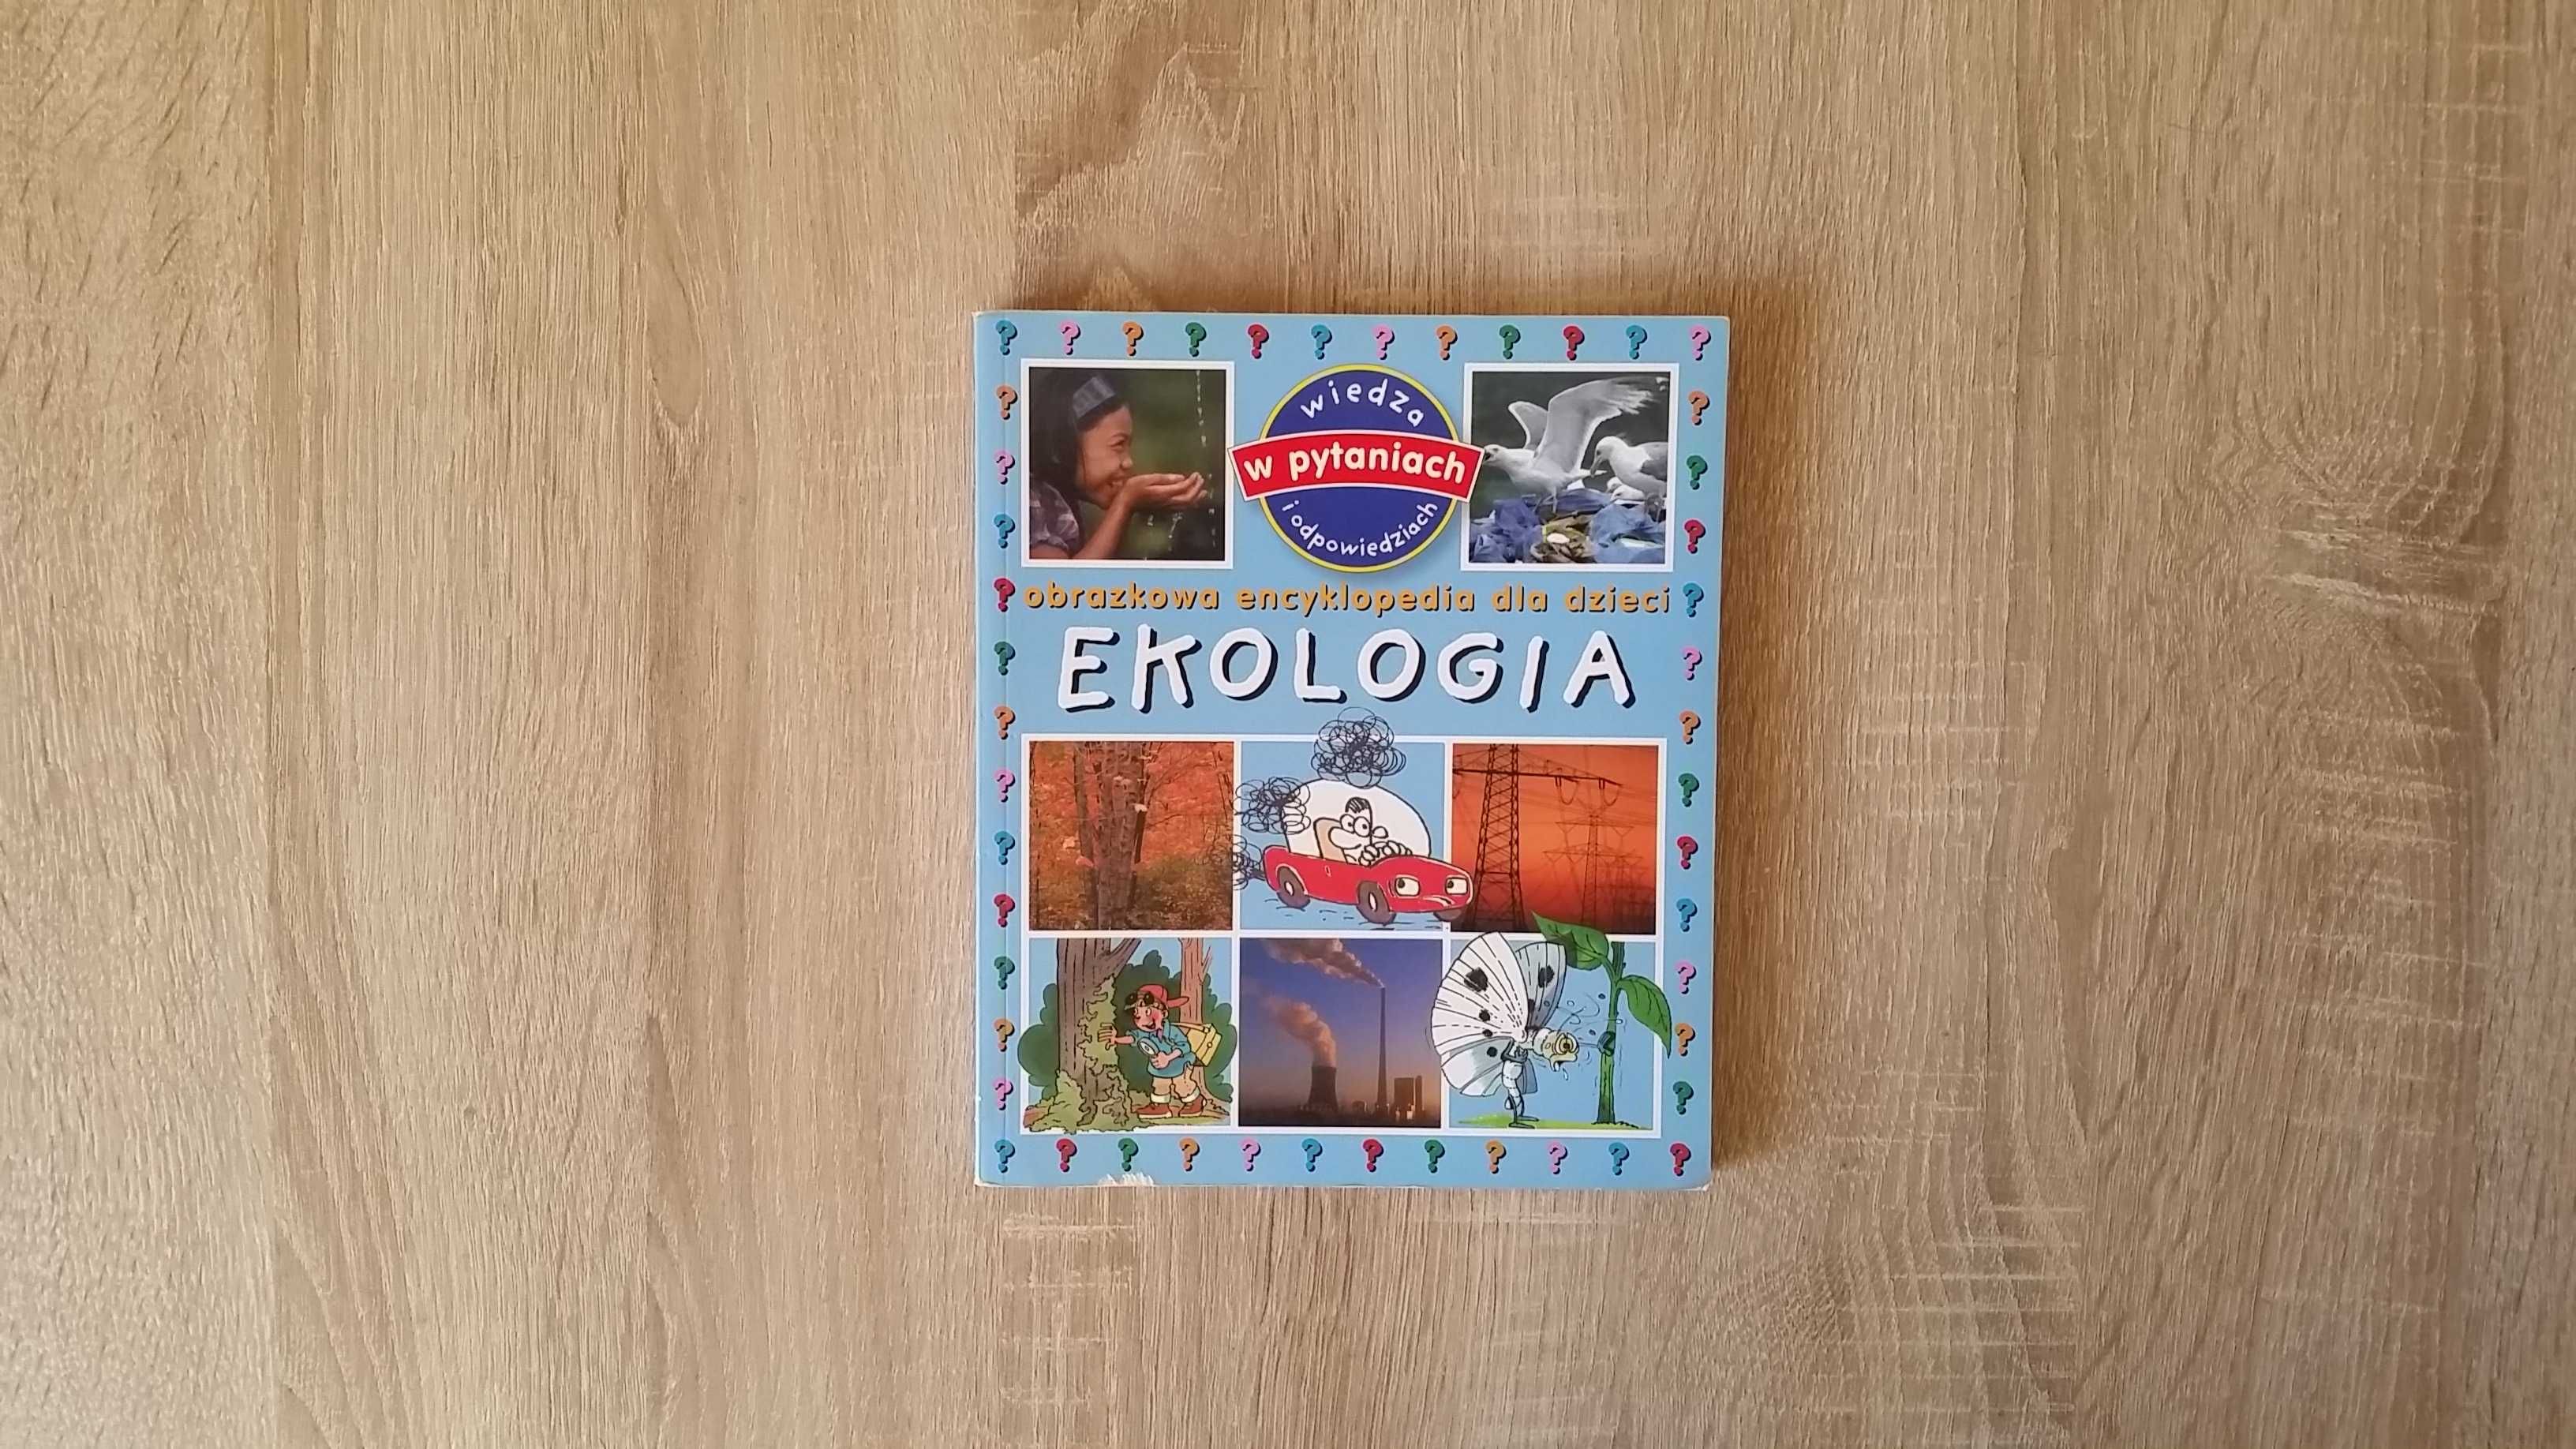 Ekologia - Obrazkowa encyklopedia dla dzieci